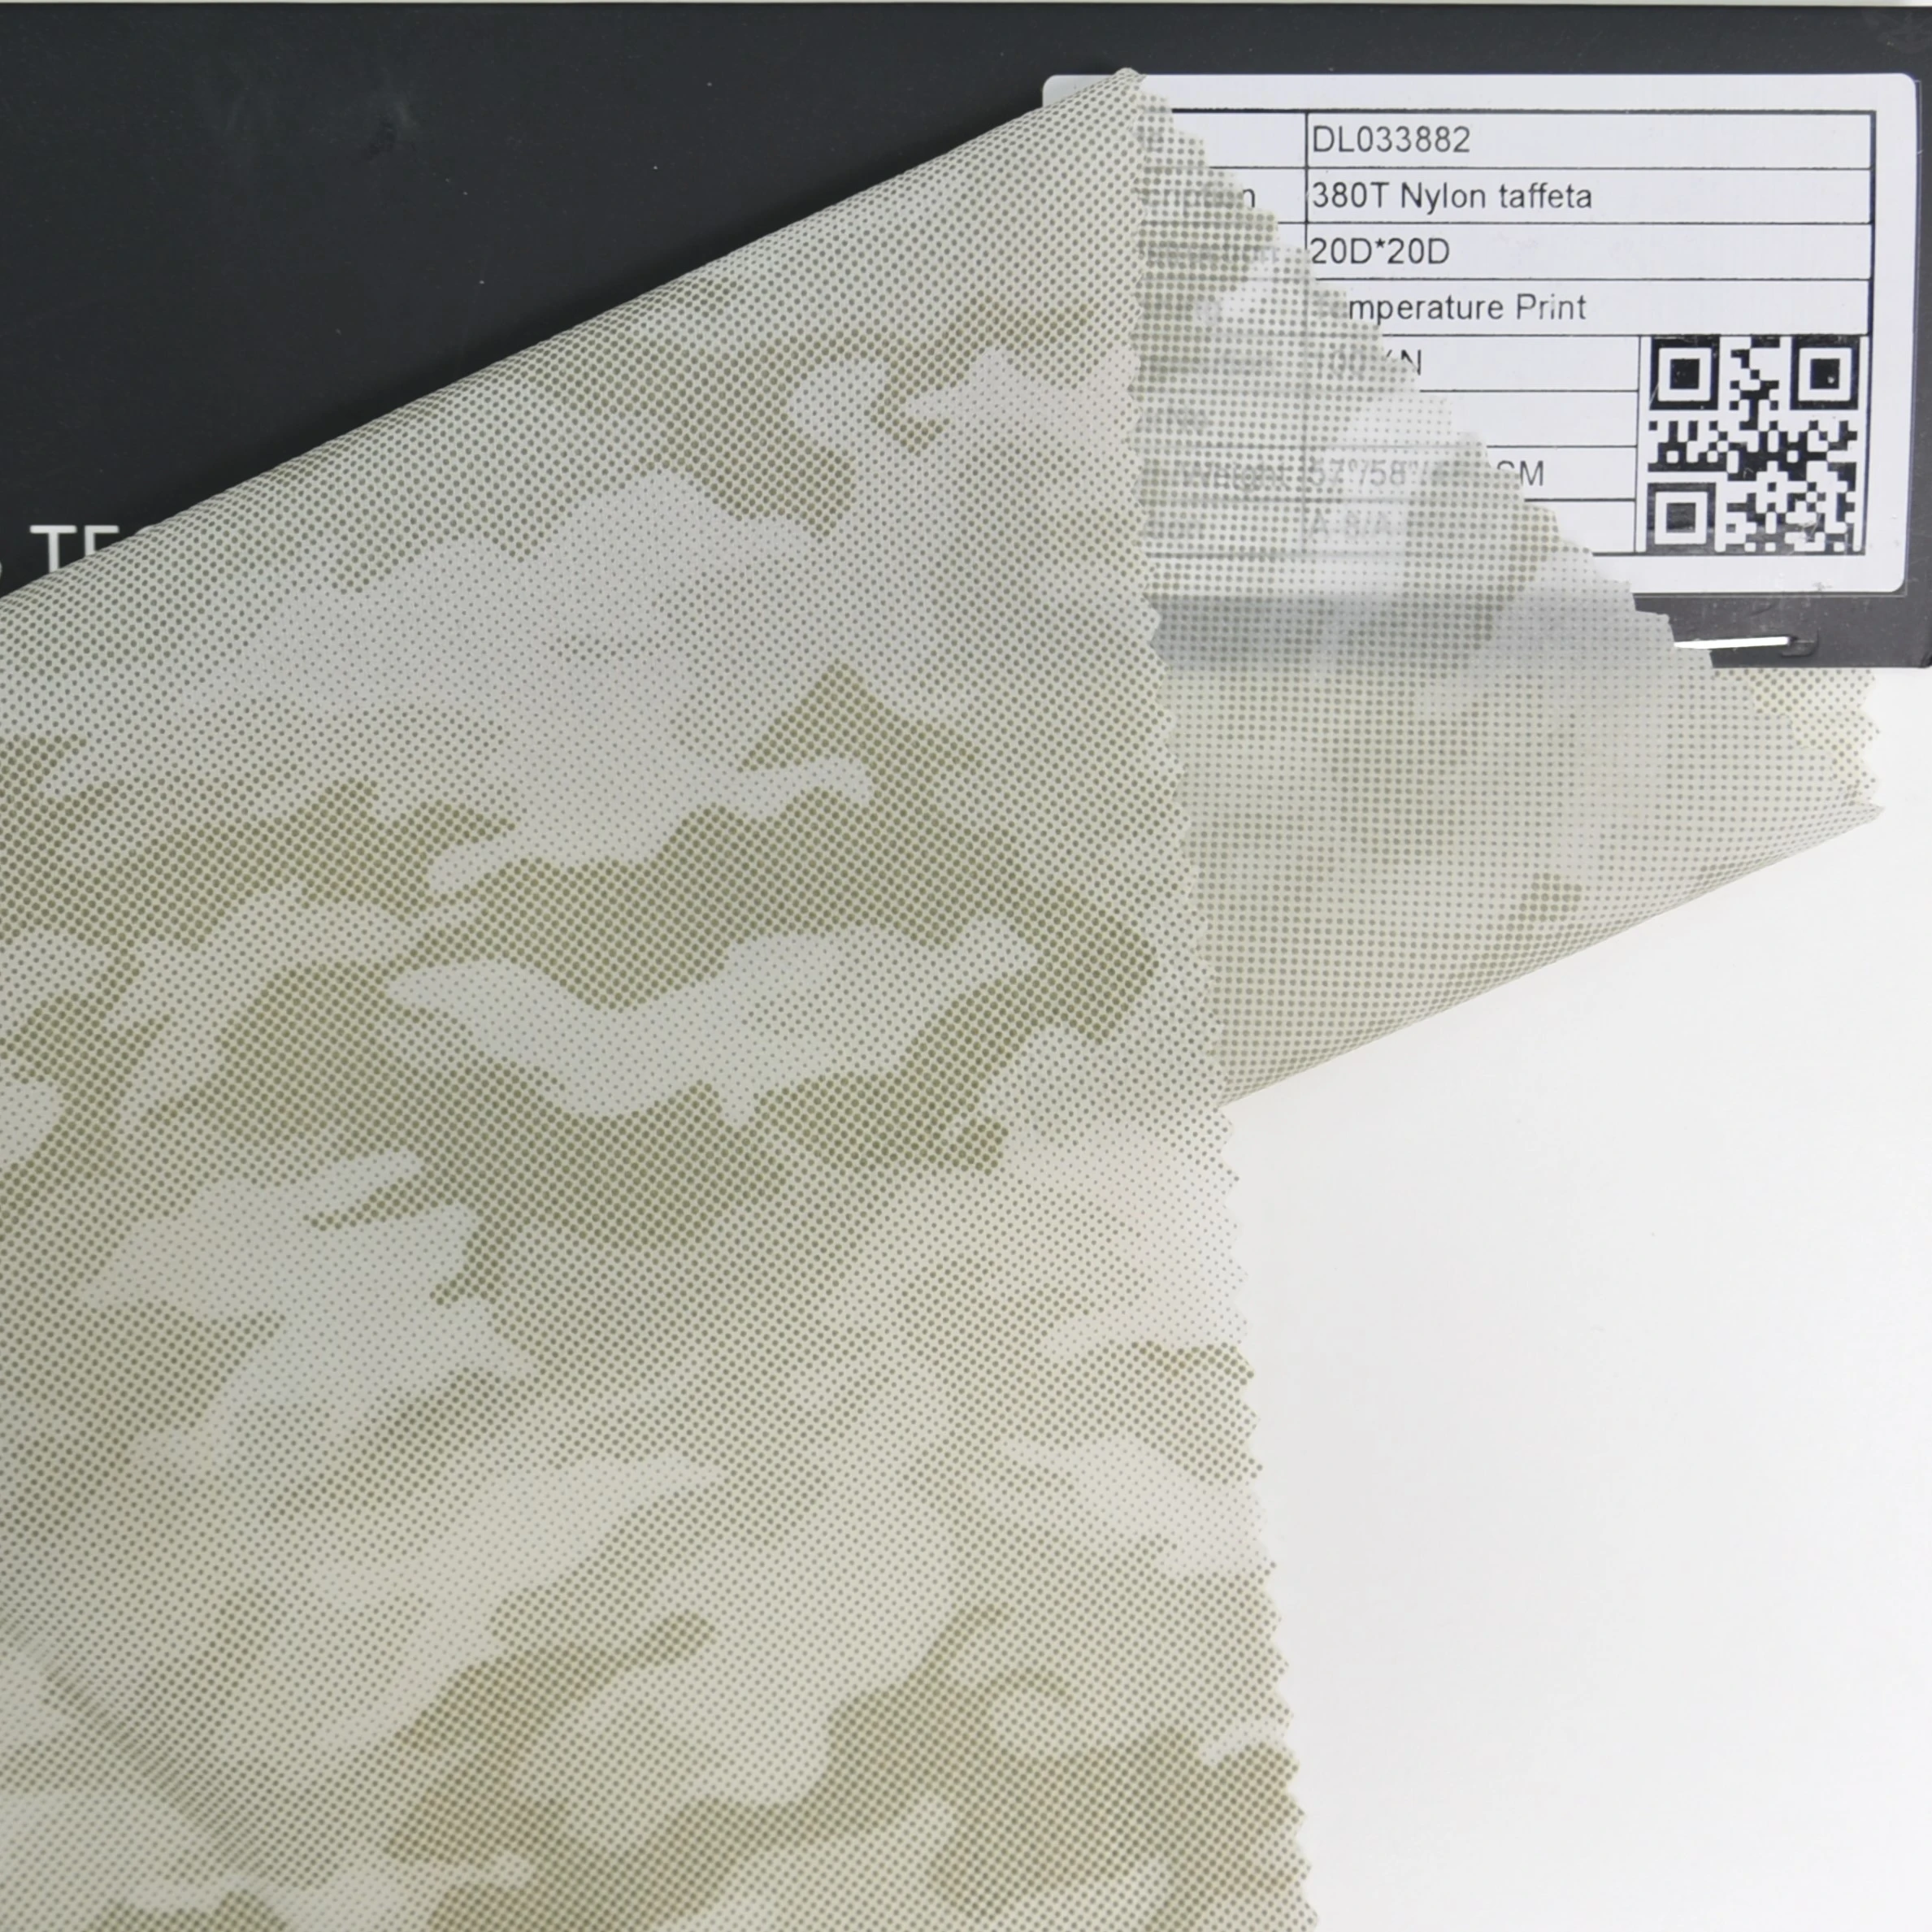 Fashion 380T Nylon taffeta Temperature Print New material Fabric